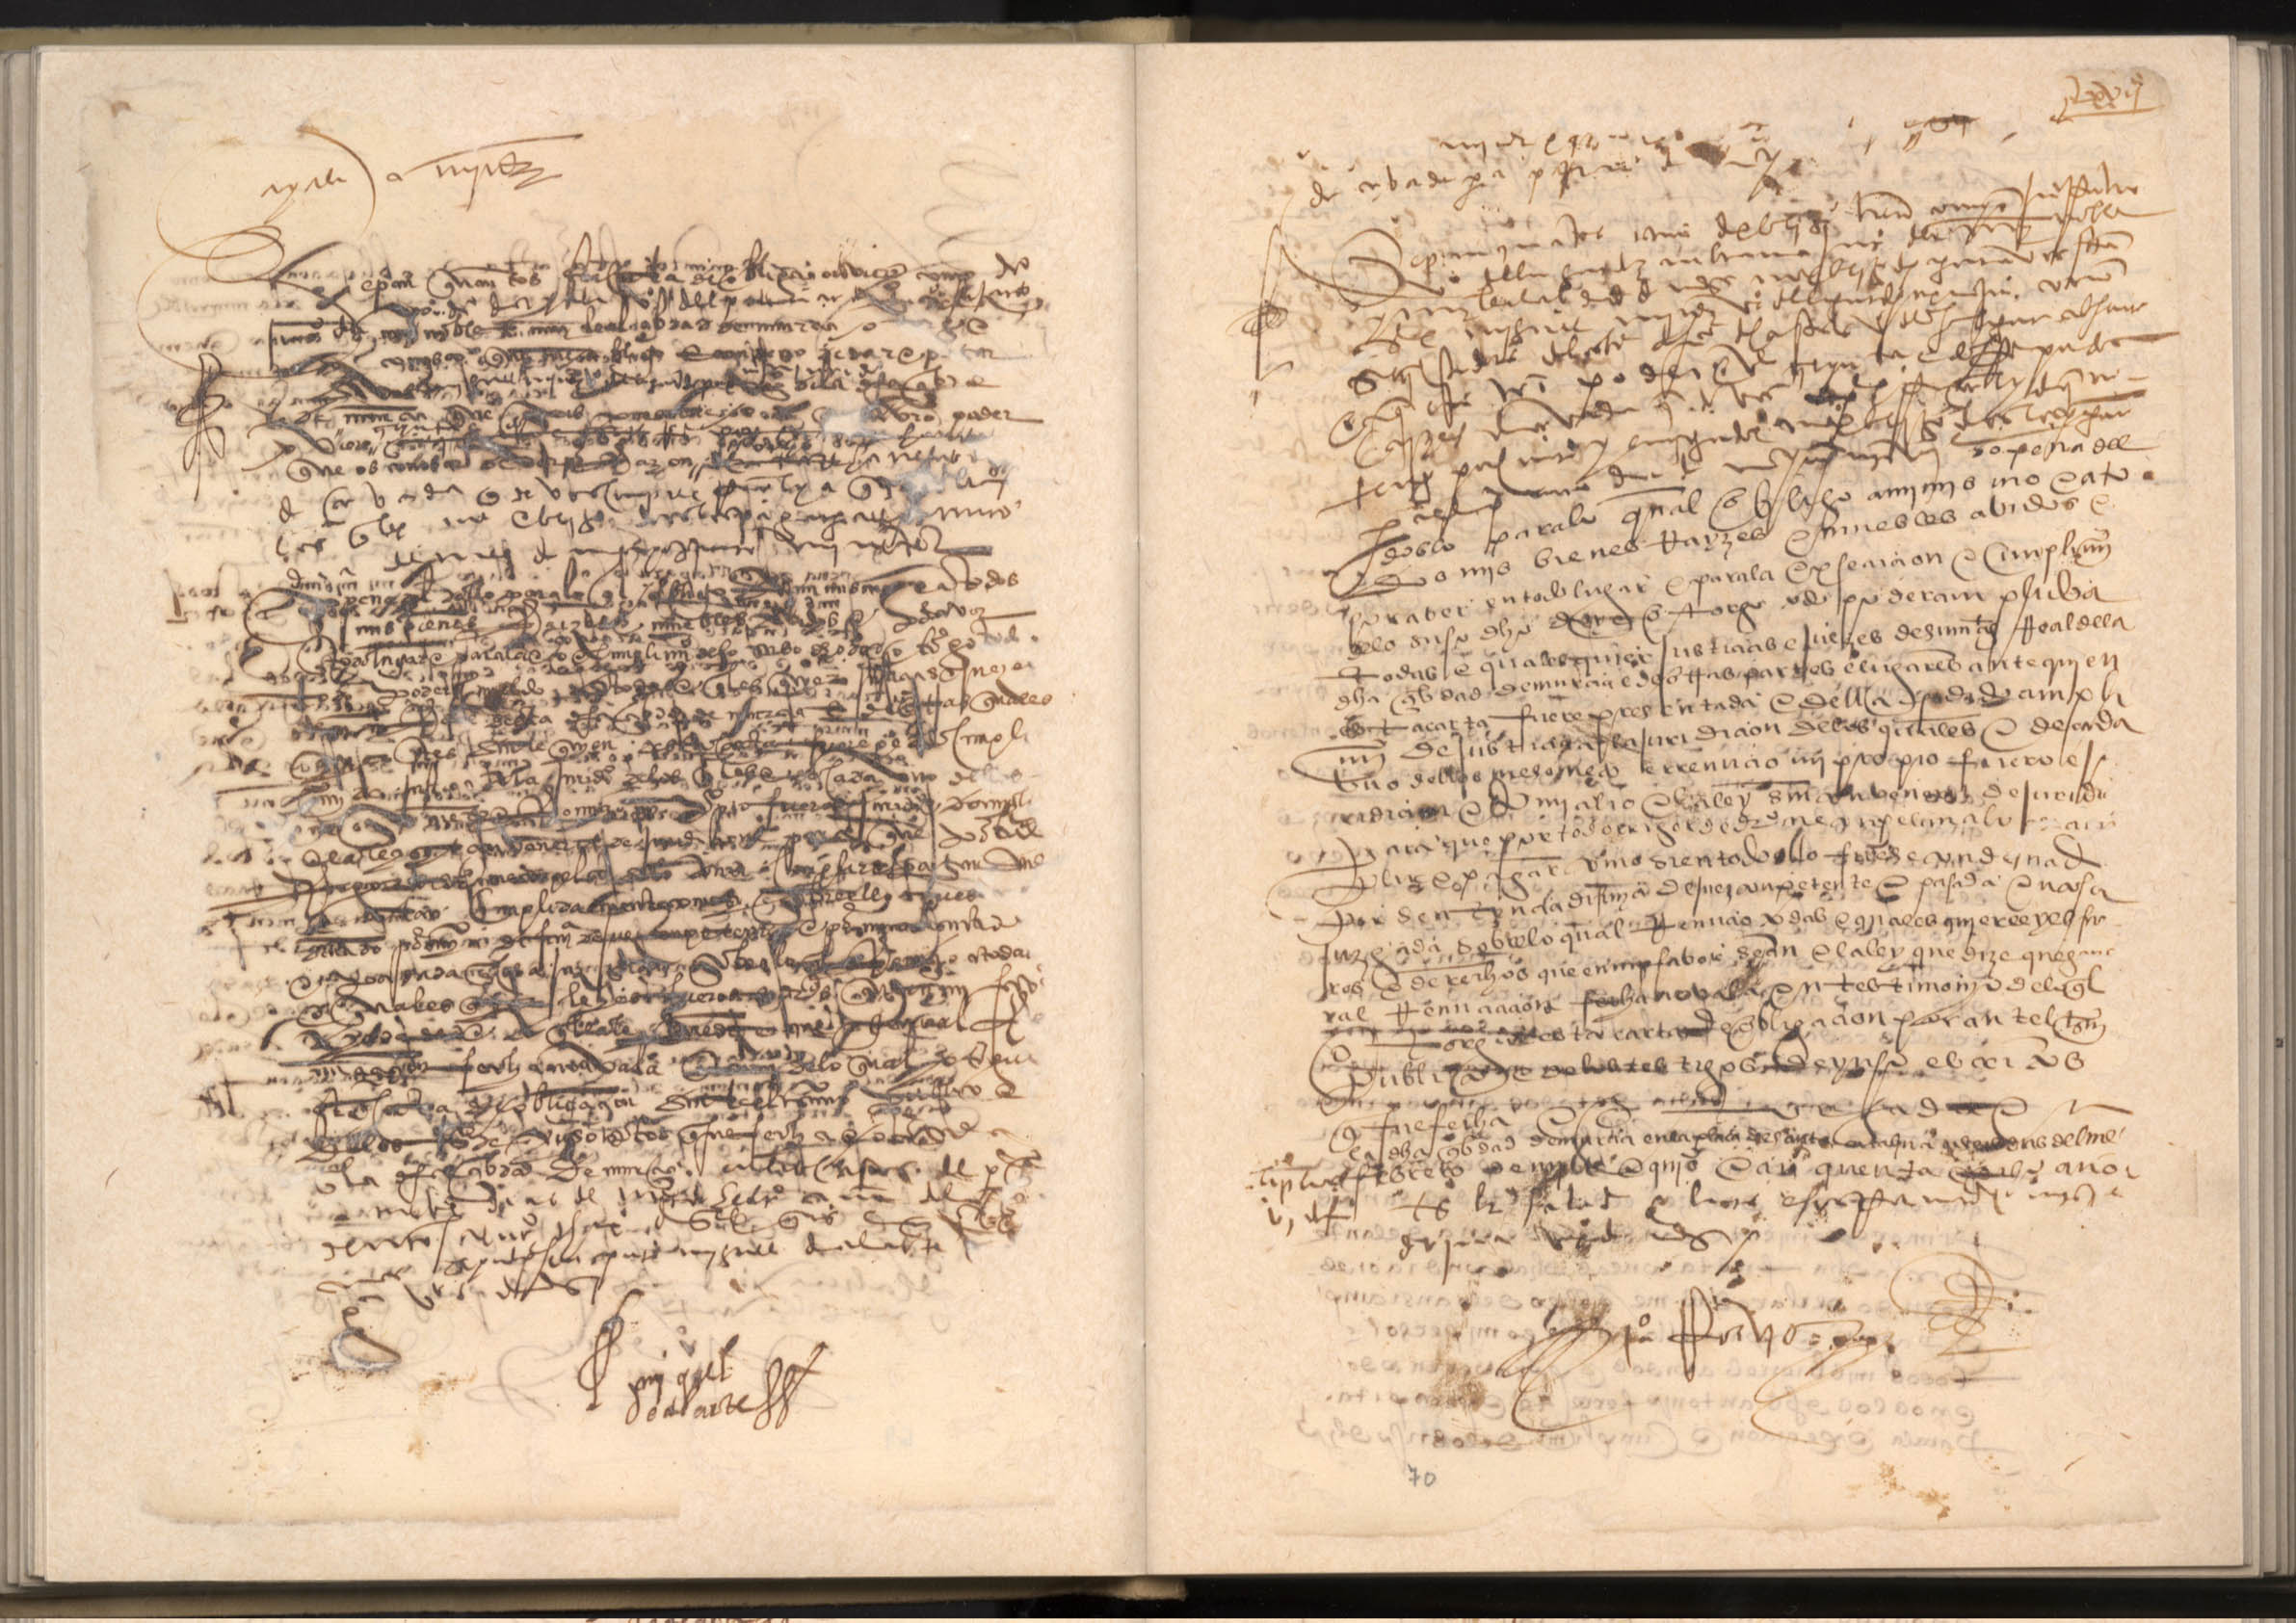 Registro de Martín Faura, Murcia de 1546-1560.